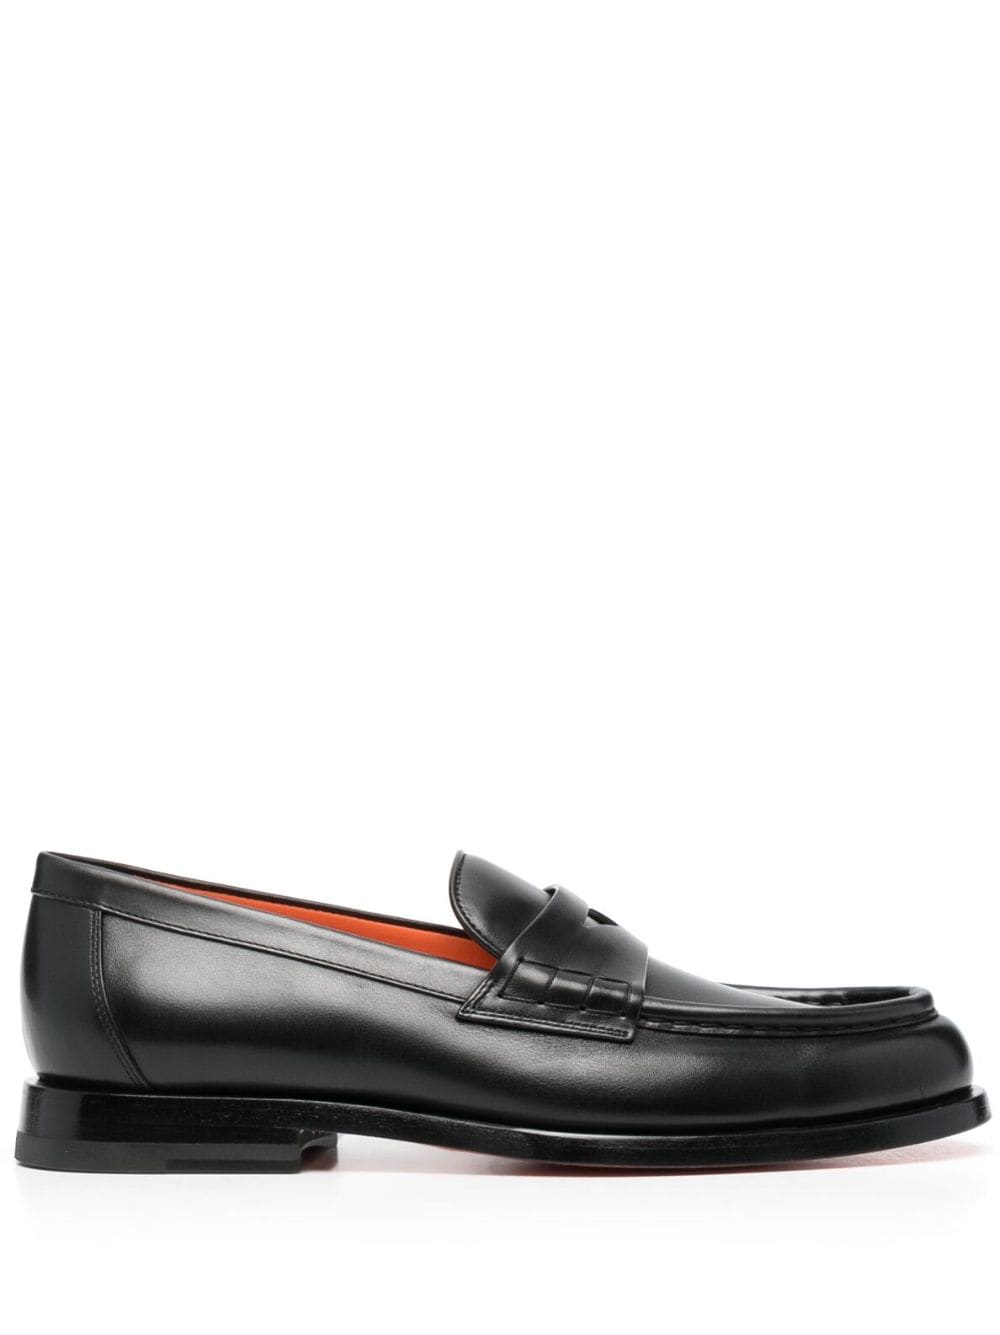 Santoni flat leather loafers - Black von Santoni